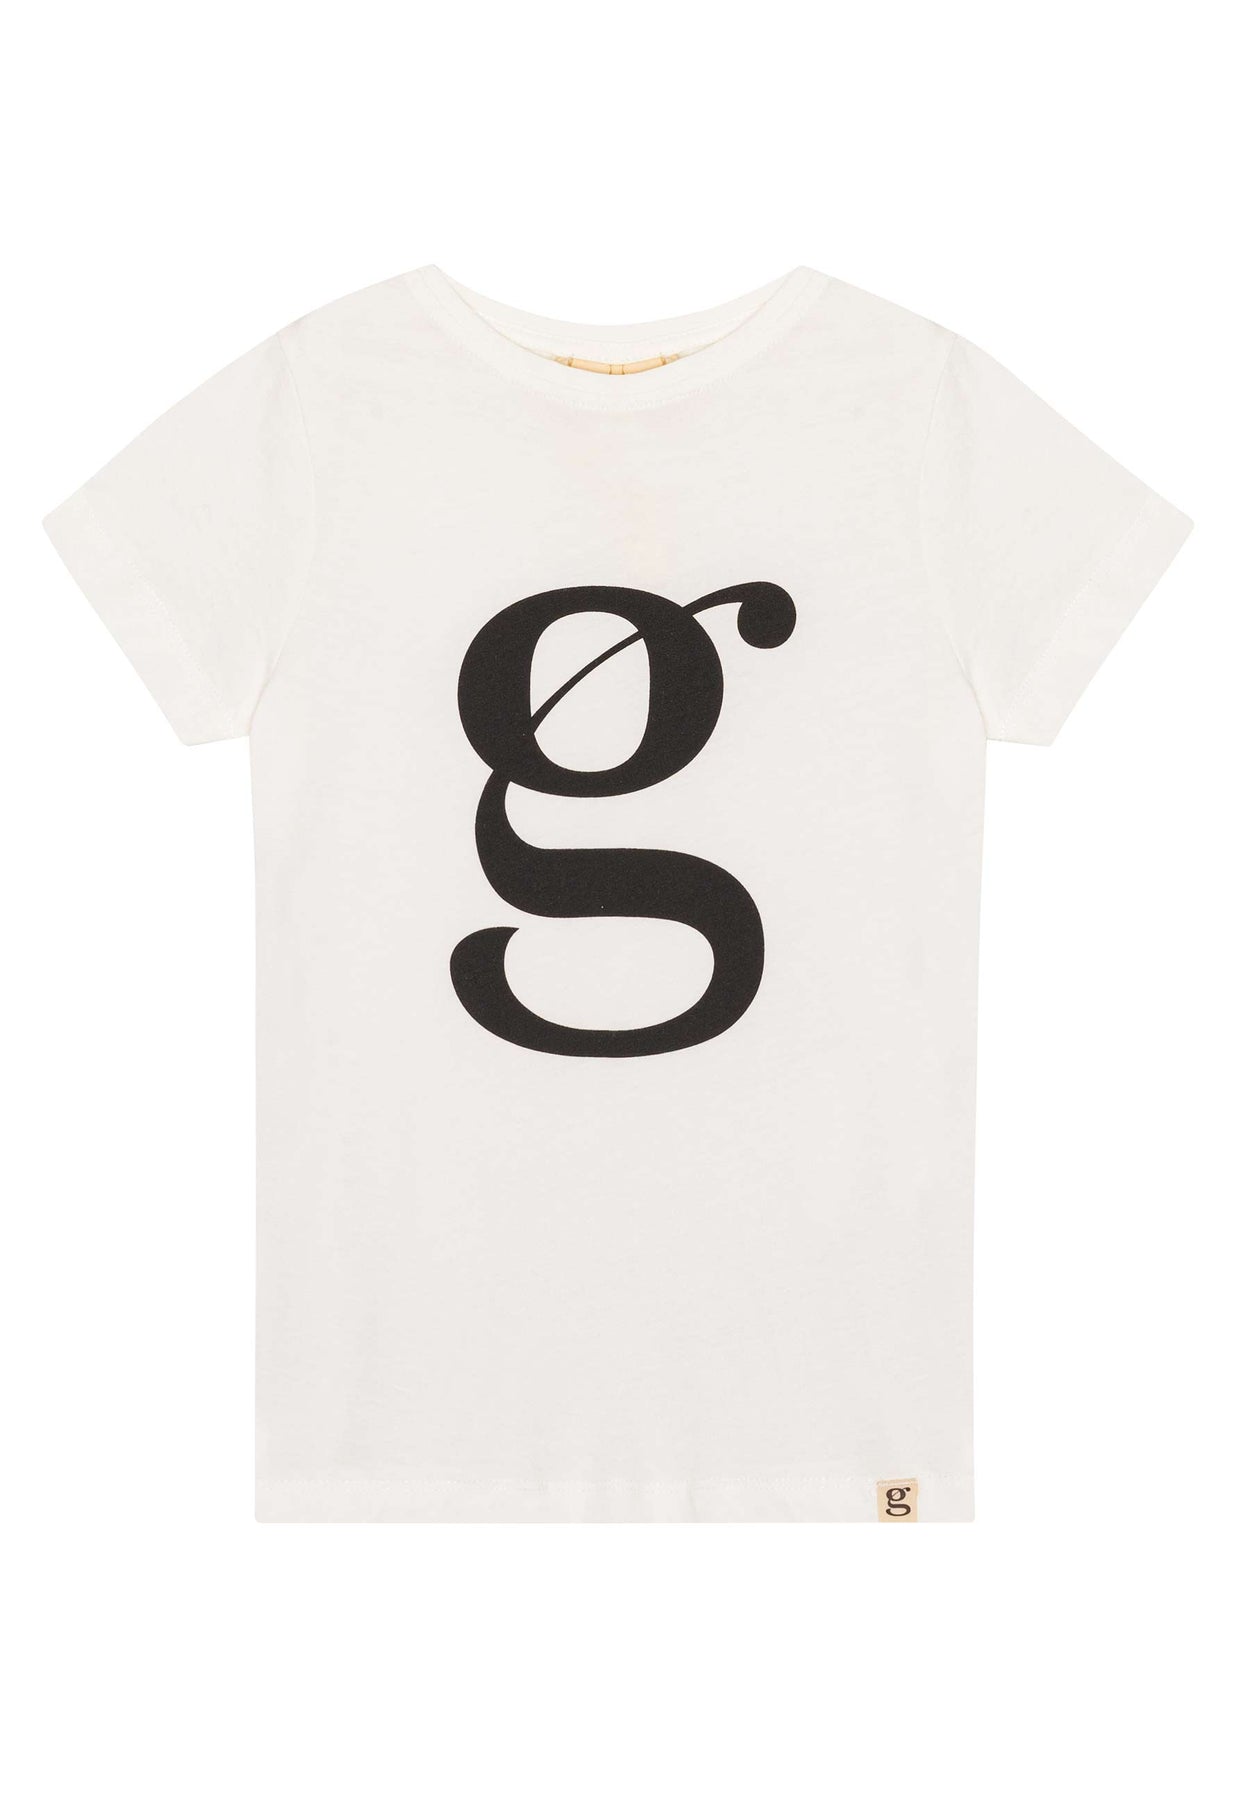 GROBUND Cleo t-shirten mini - den med logo